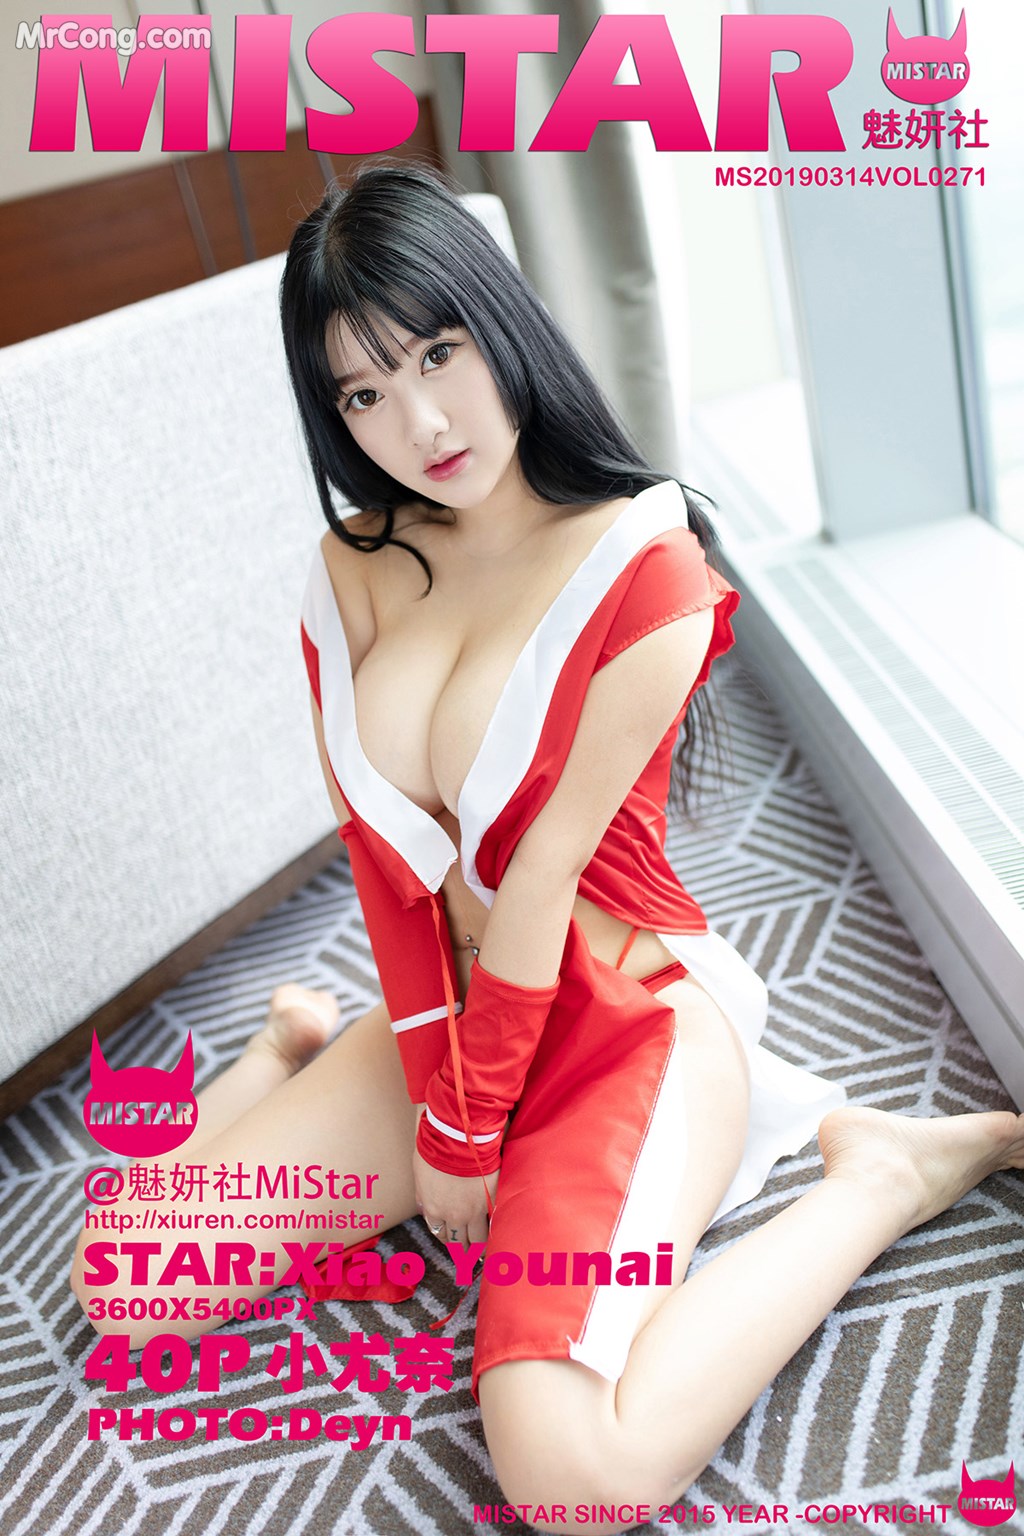 MiStar Vol. 252: Model Xiao You Nai (小 尤奈) (41 photos) photo 1-0